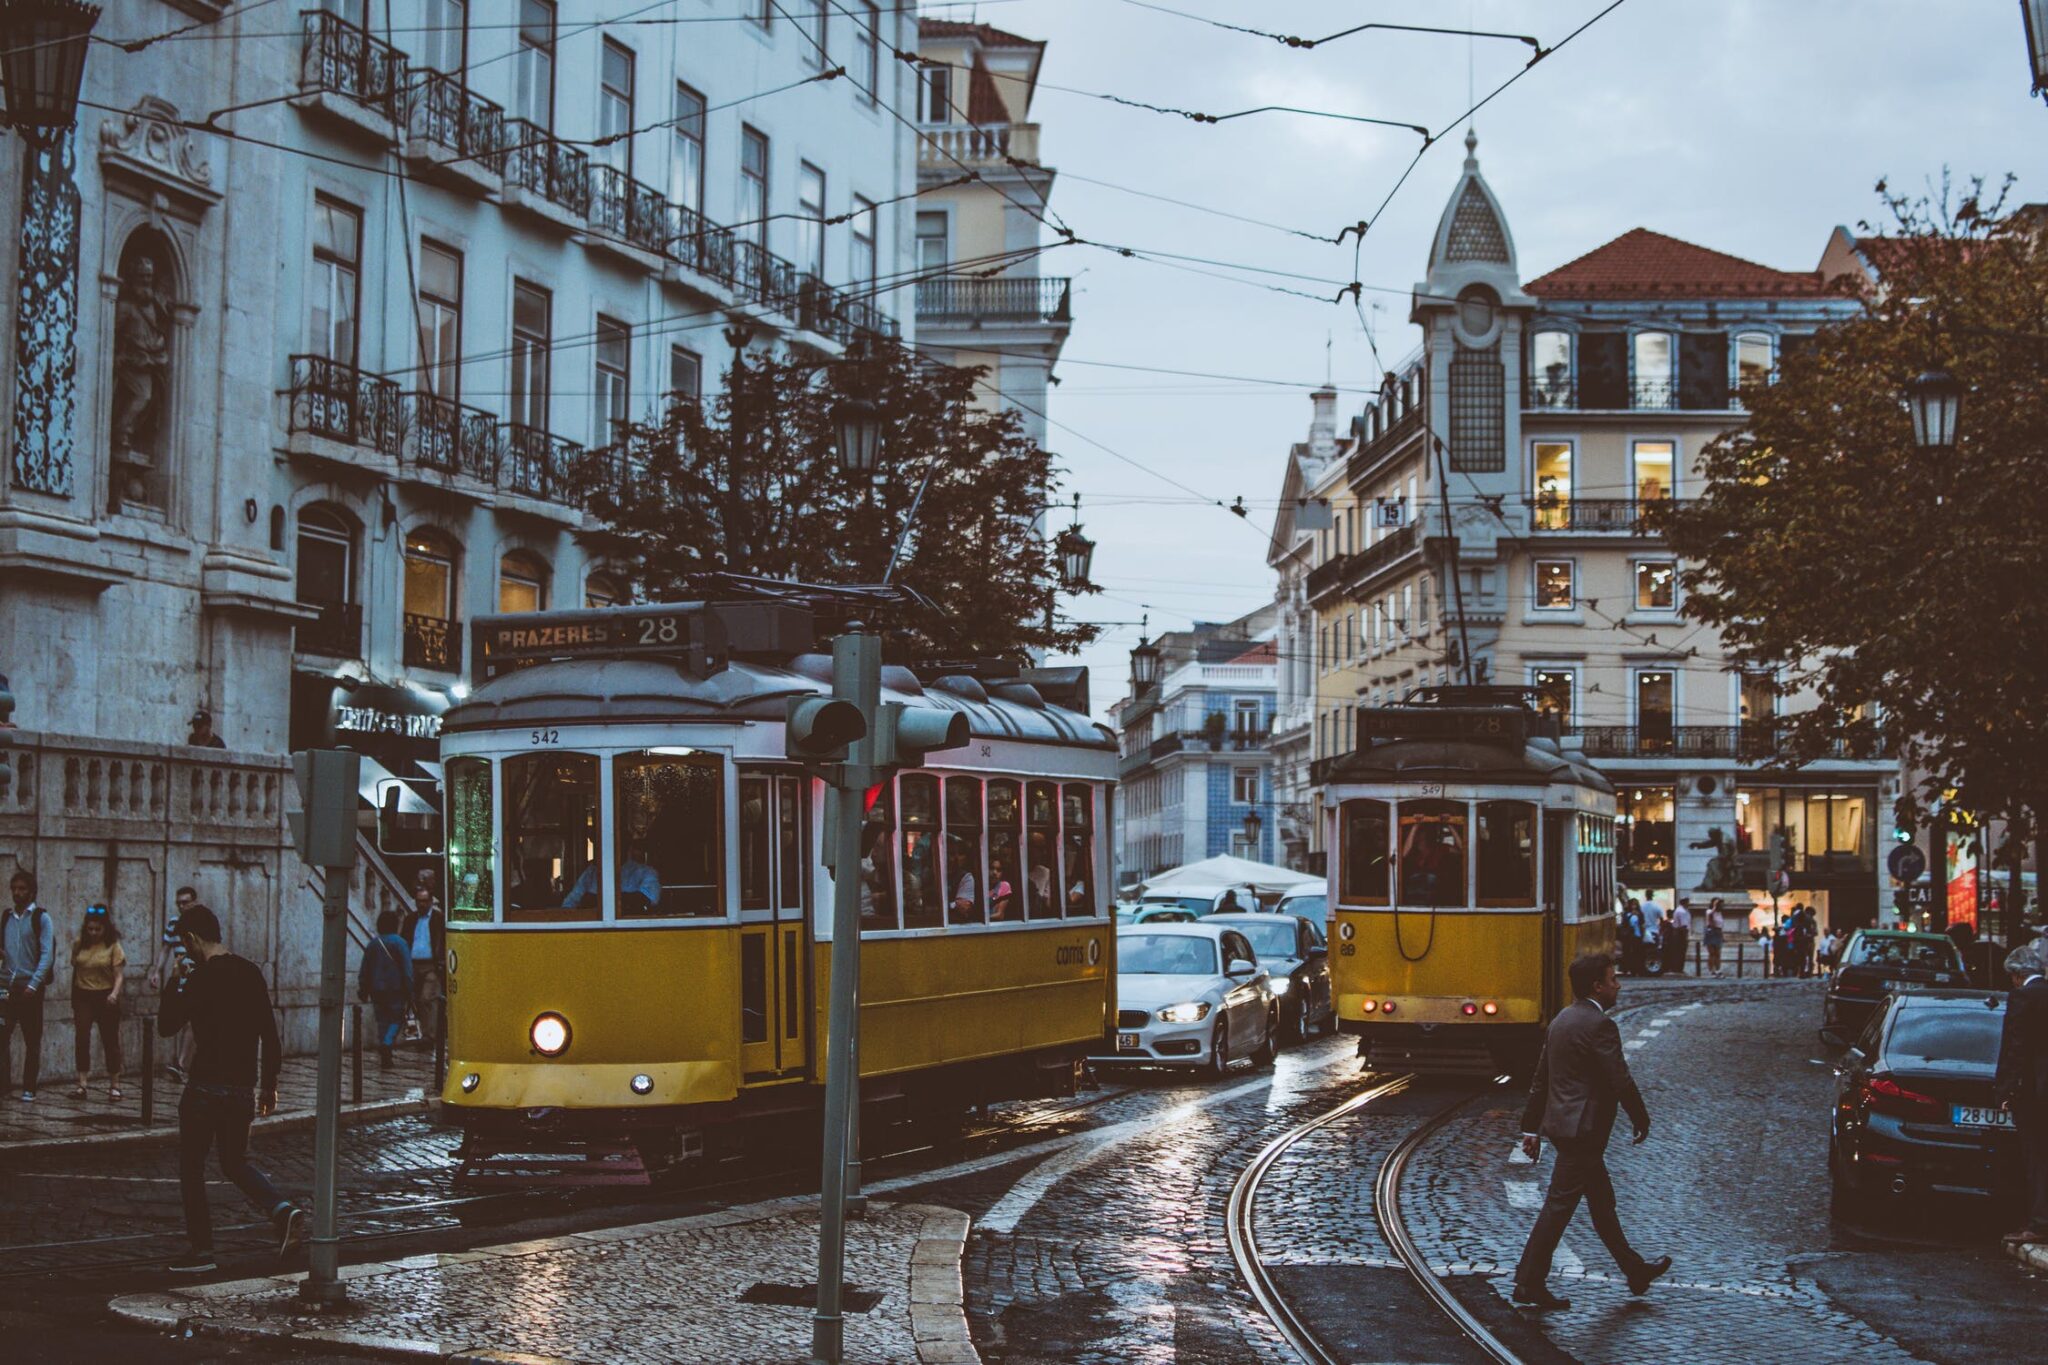 Viver em Portugal - Demografia